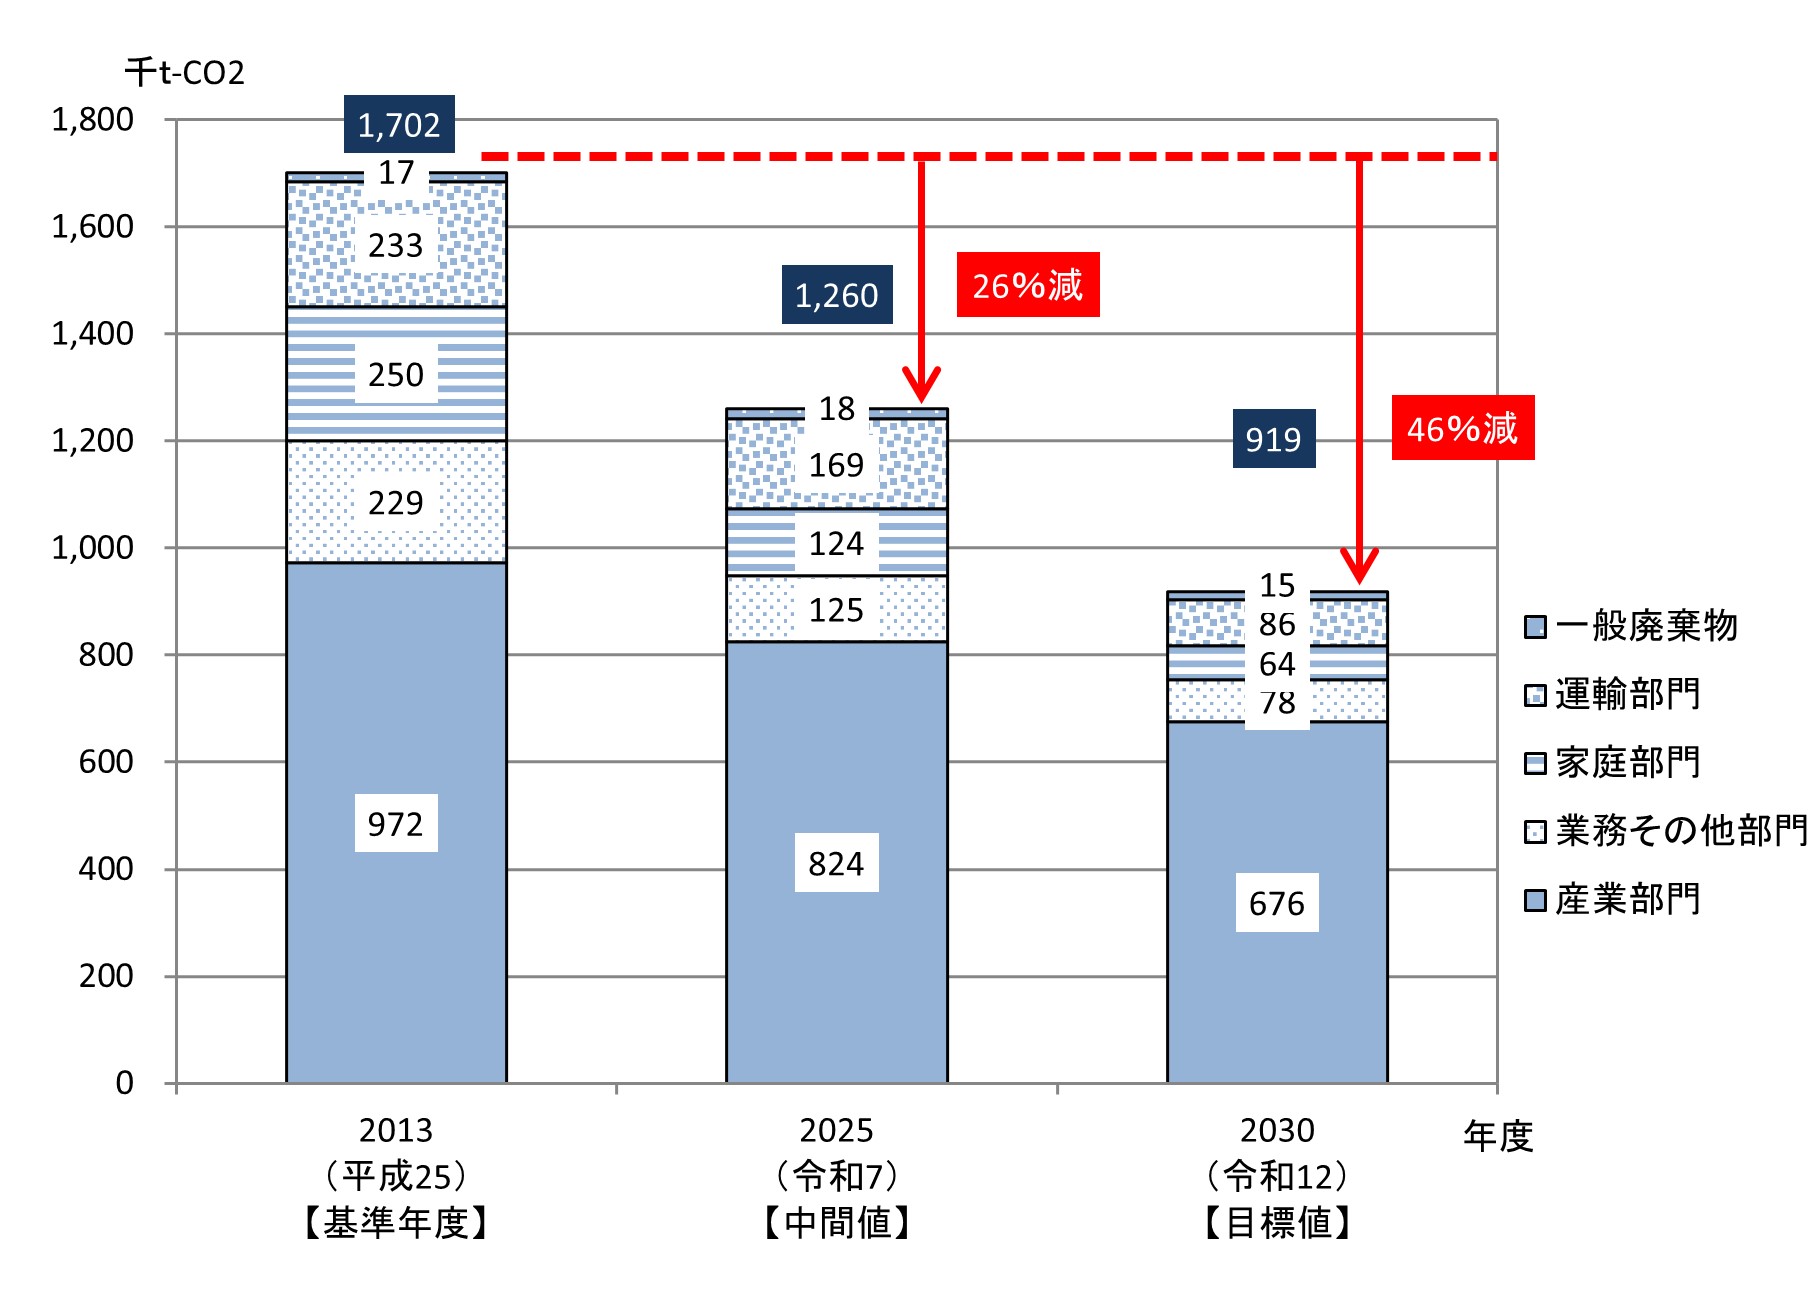 佐倉市の温室効果ガス（CO2）排出量の削減目標